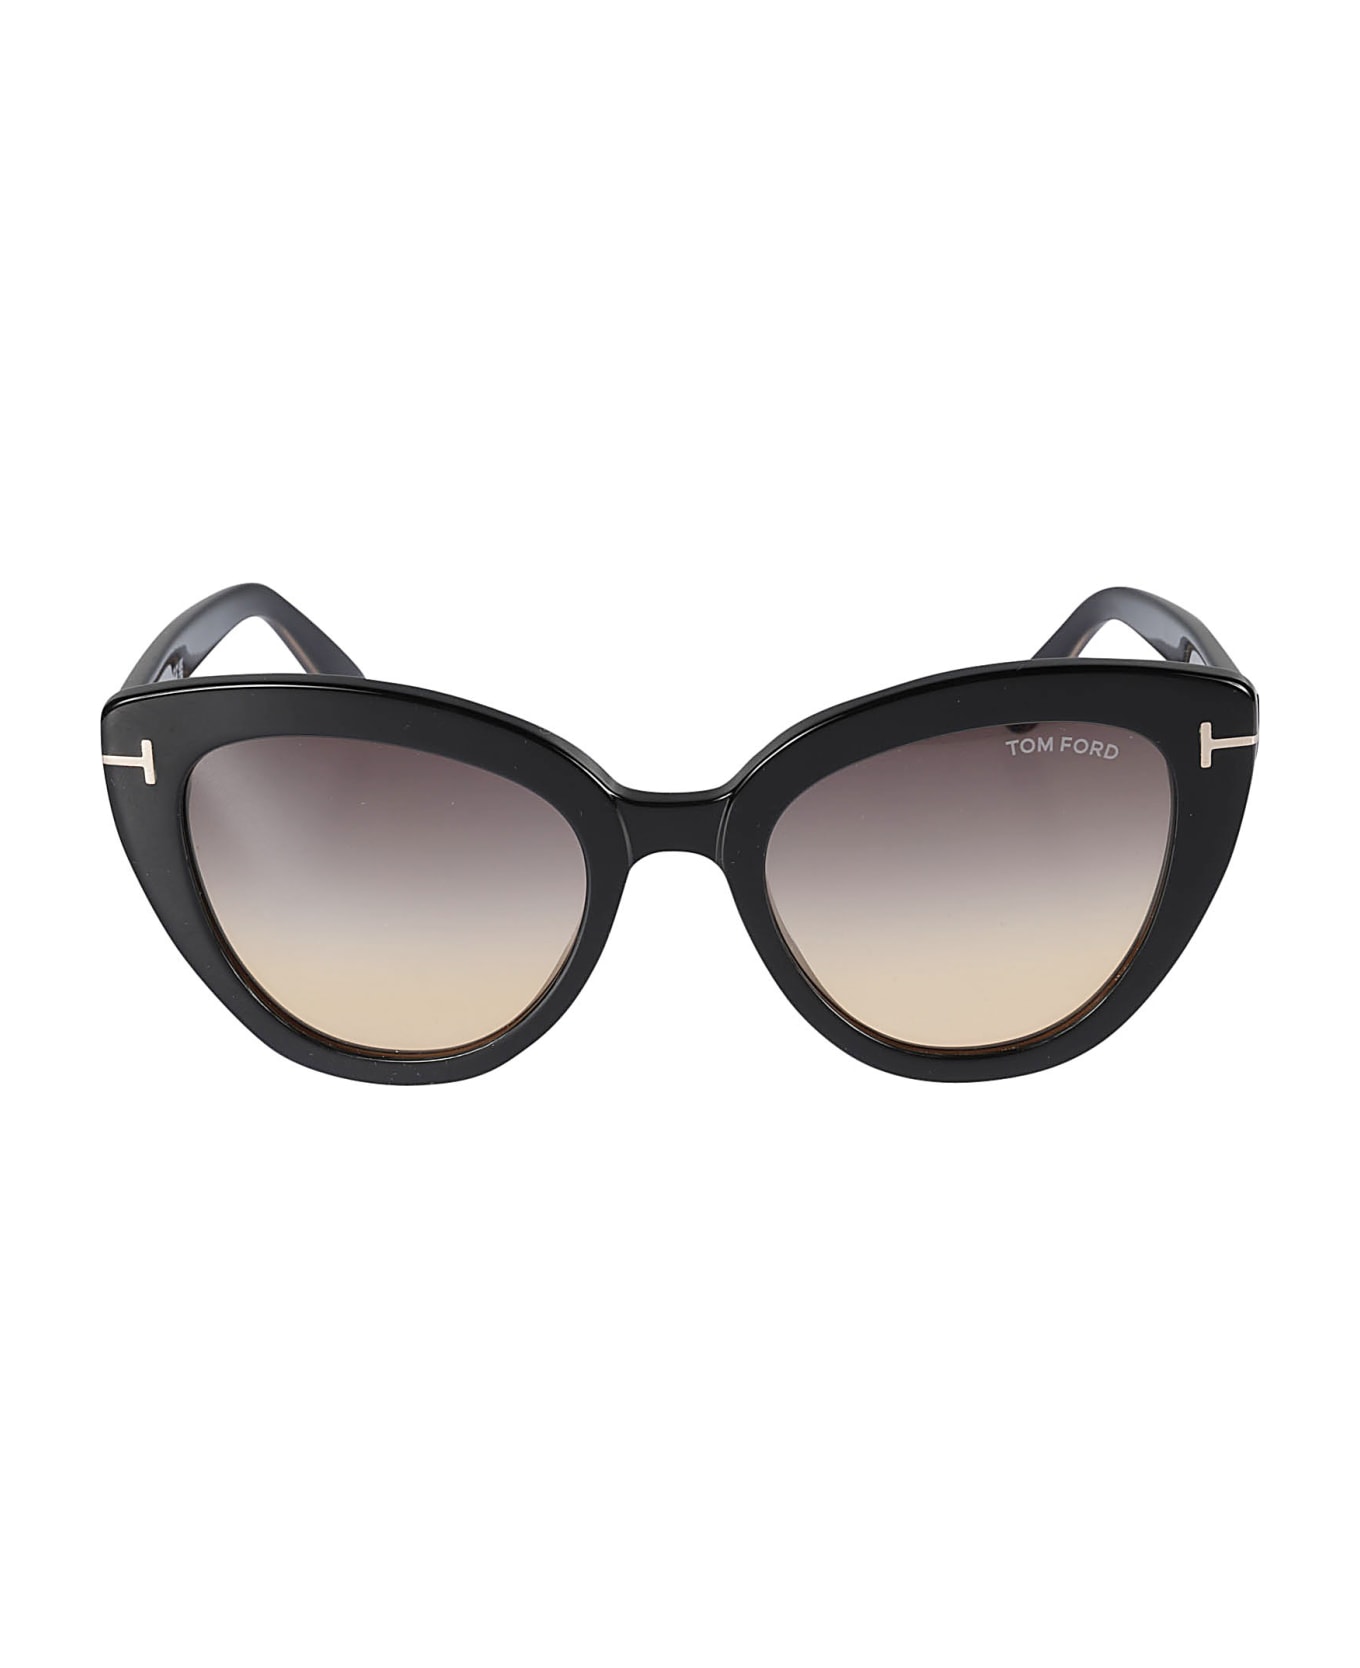 Tom Ford Eyewear Izzi Nero Sunglasses - Nero